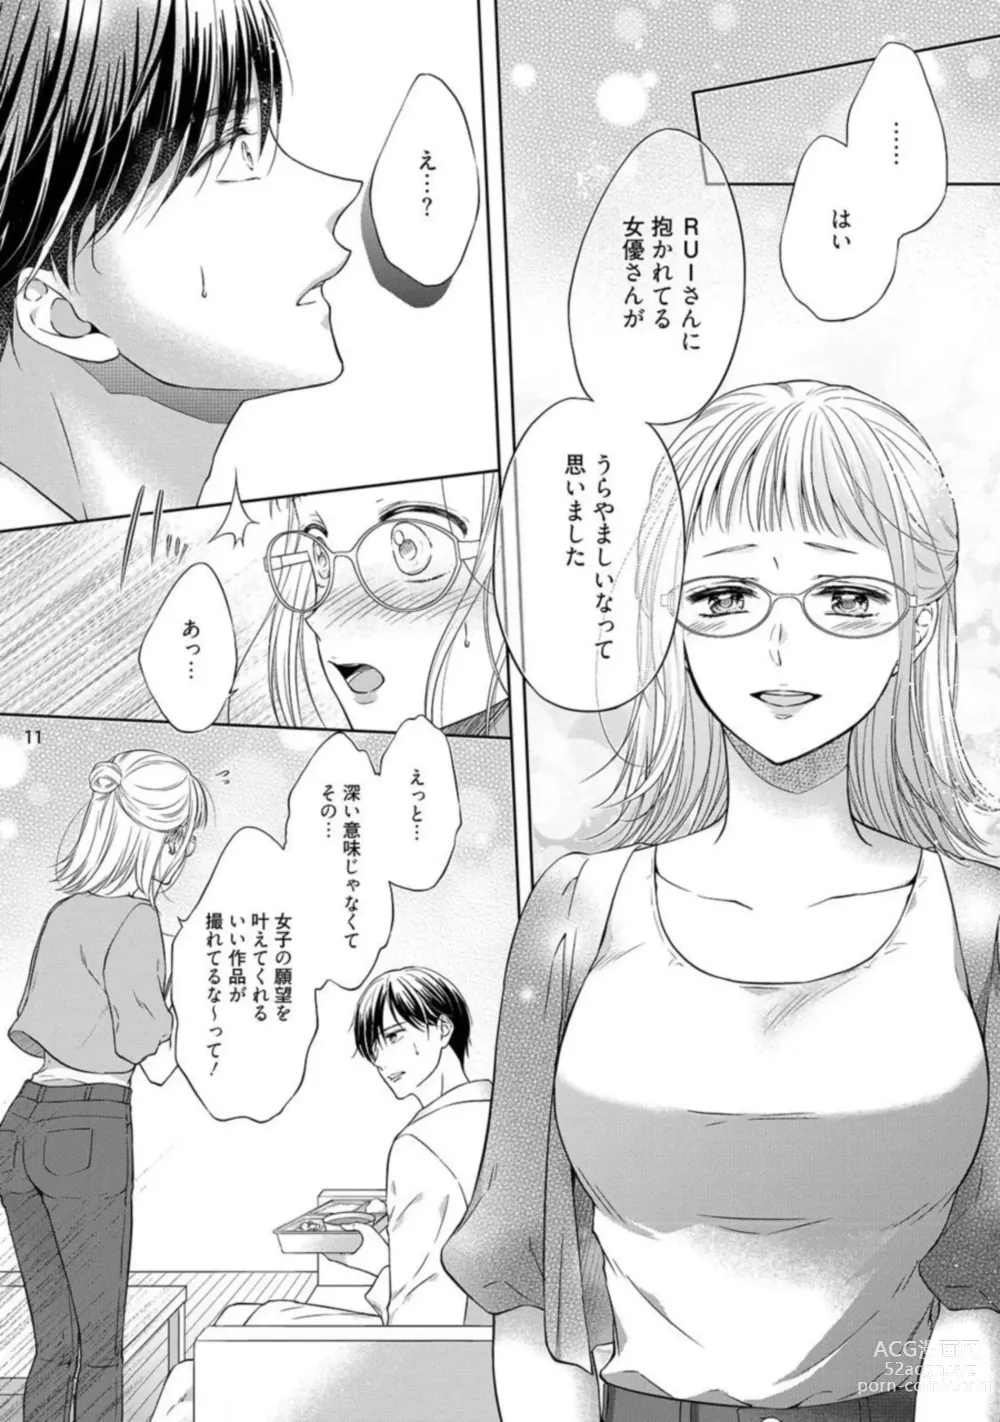 Page 12 of manga Erotikkufirumu Shojo Kantoku wa Sekushī Danyū no Gokujō Teku ni Nurete 3